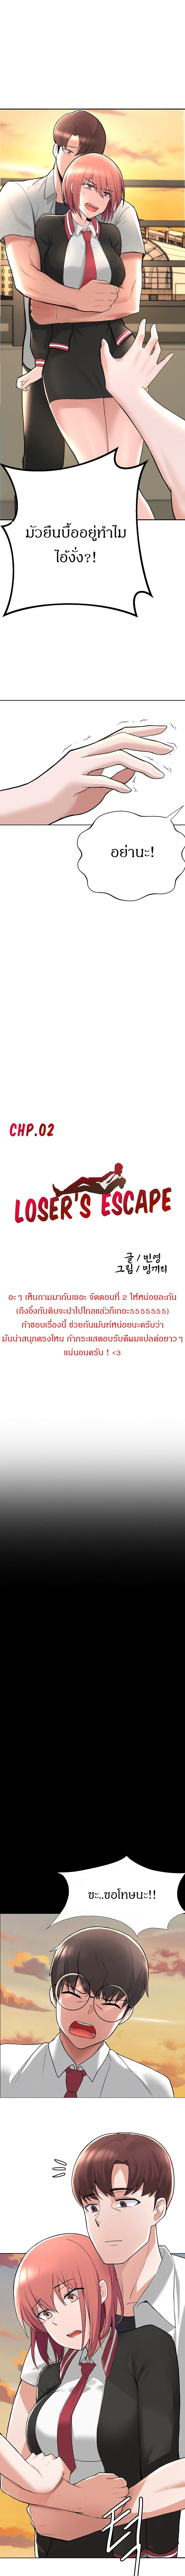 Escape Loser 2 (2)